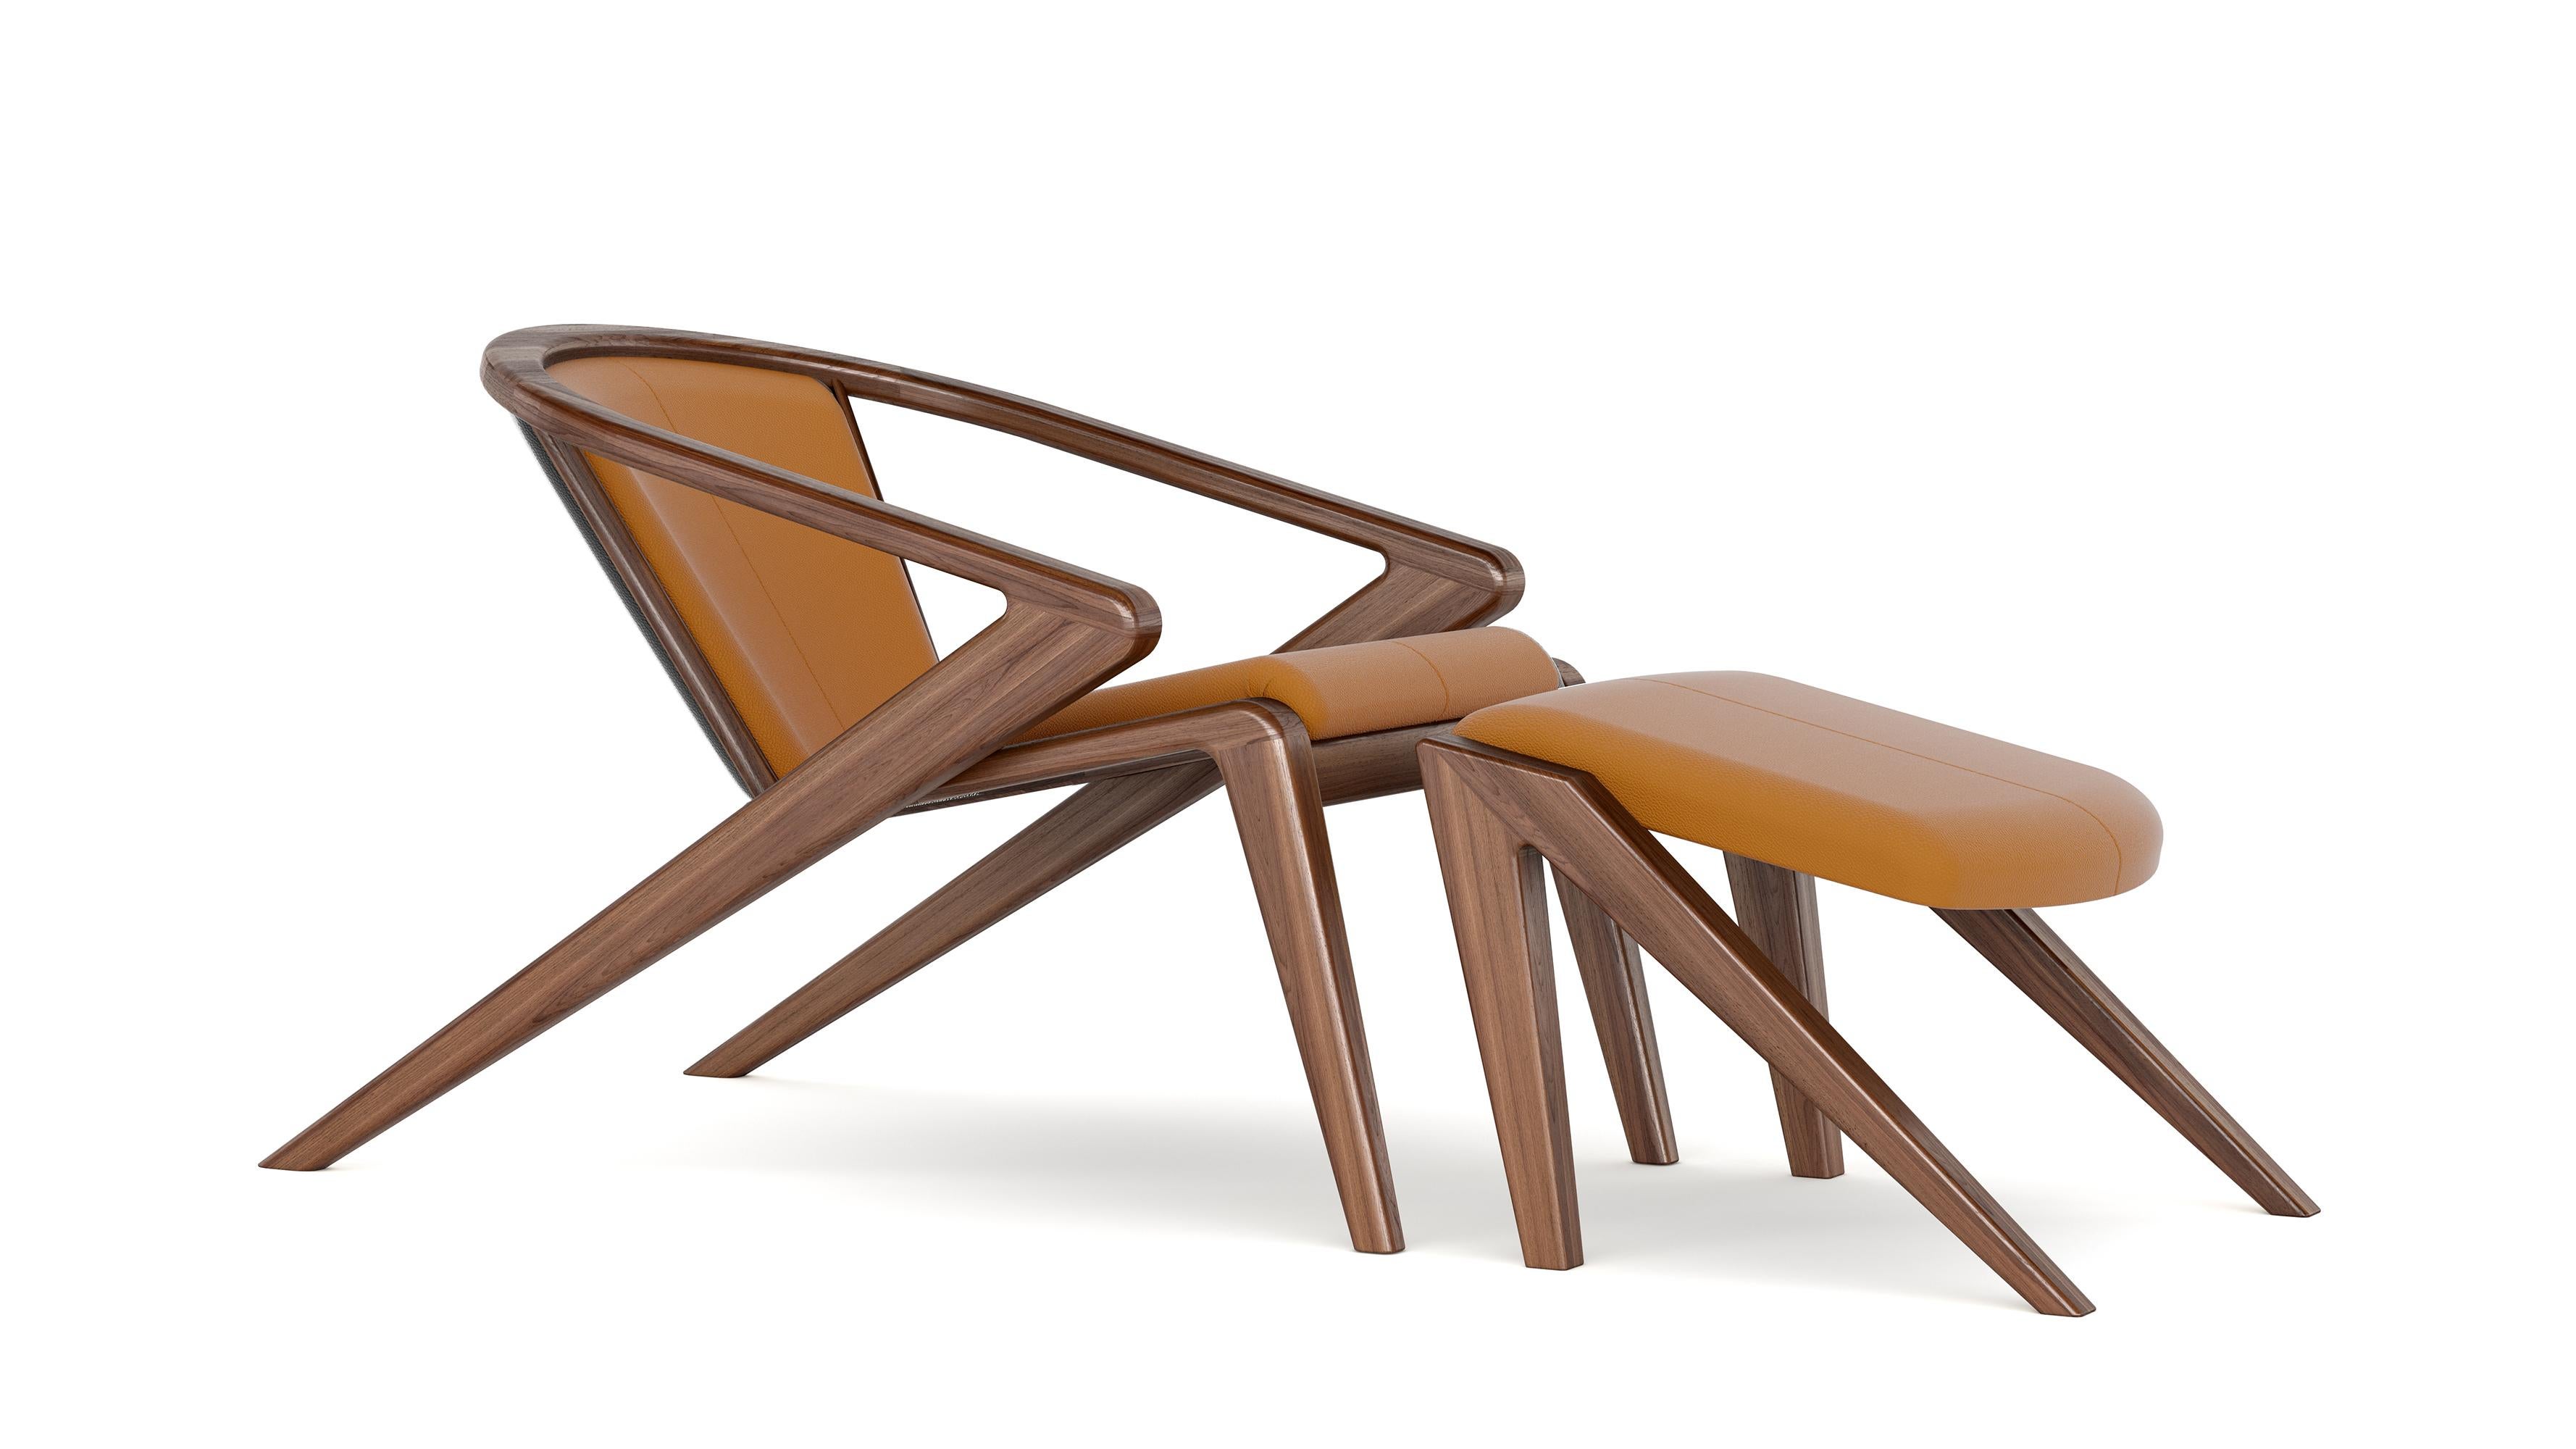 Der von Alexandre Caldas entworfene Portuguese Roots (PR) Lounge Chair ist der pure Ausdruck eines 25-jährigen Reifeprozesses, der in einer perfekten Symbiose zwischen Kunst und Handwerk endet. Der Stuhl wurde entworfen, um eine Geschichte